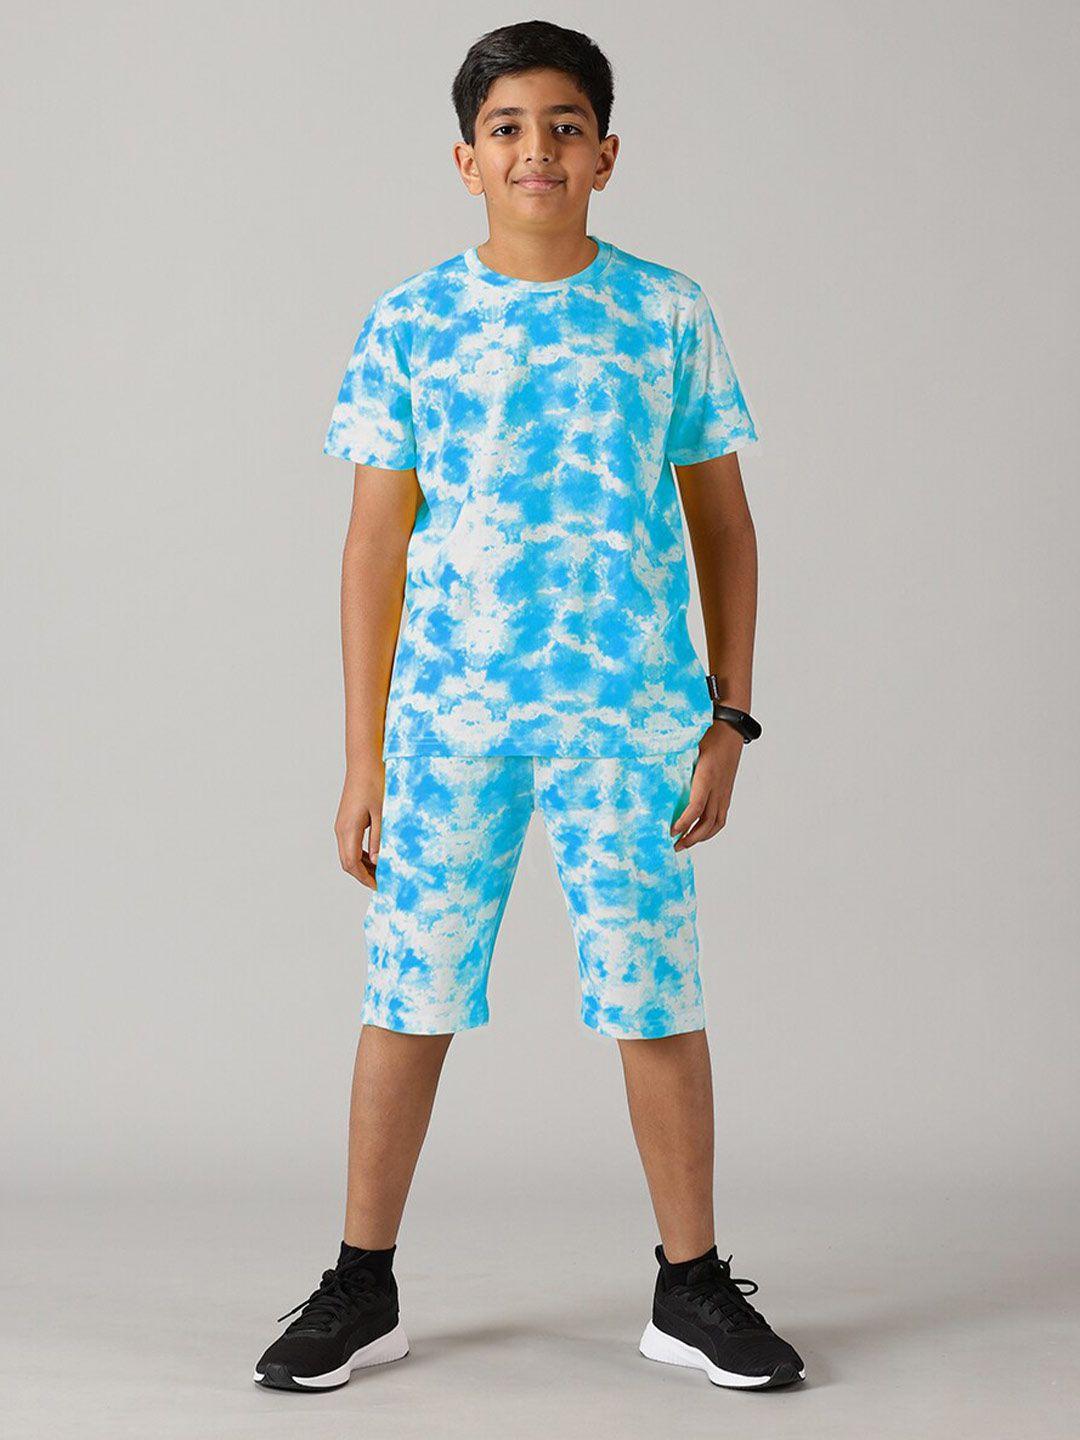 kiddopanti boys tie & dye cotton t-shirt with shorts set